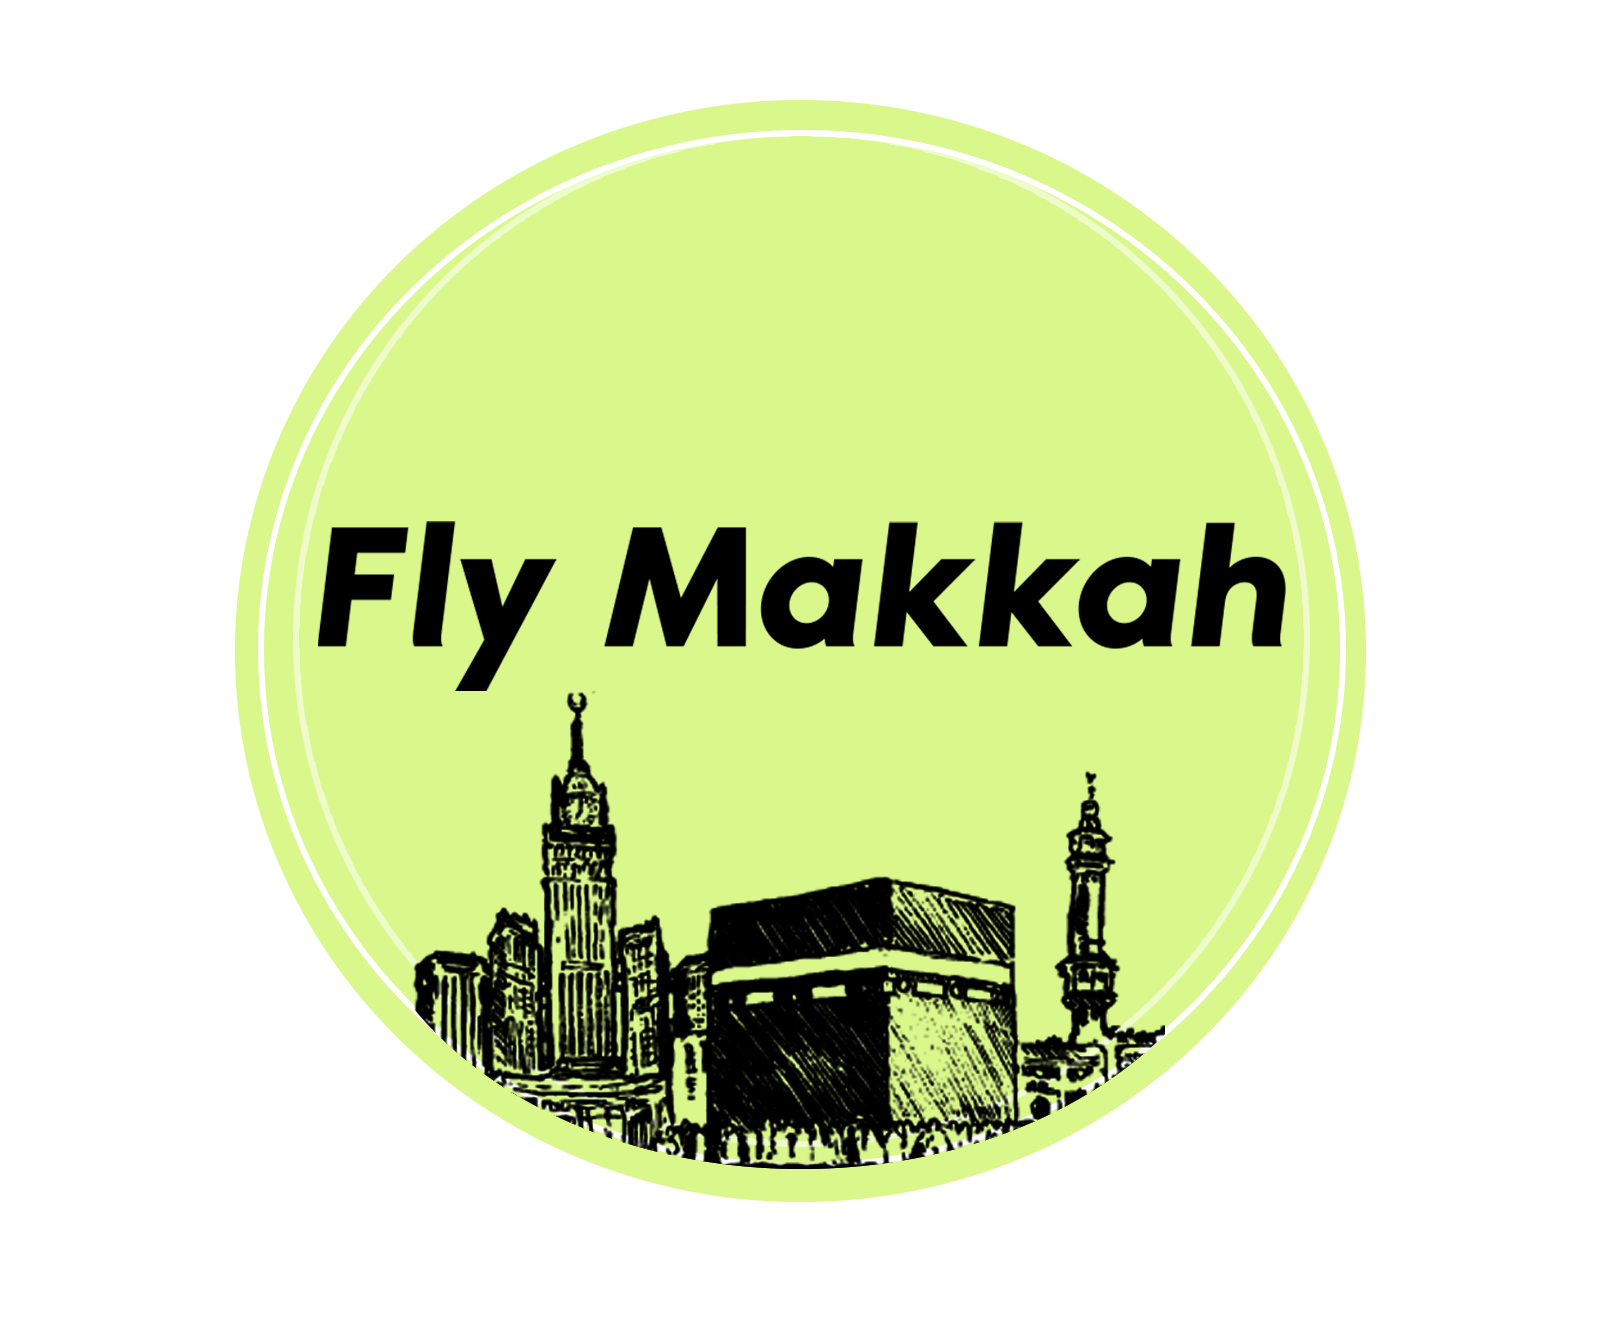 Fly Makkah